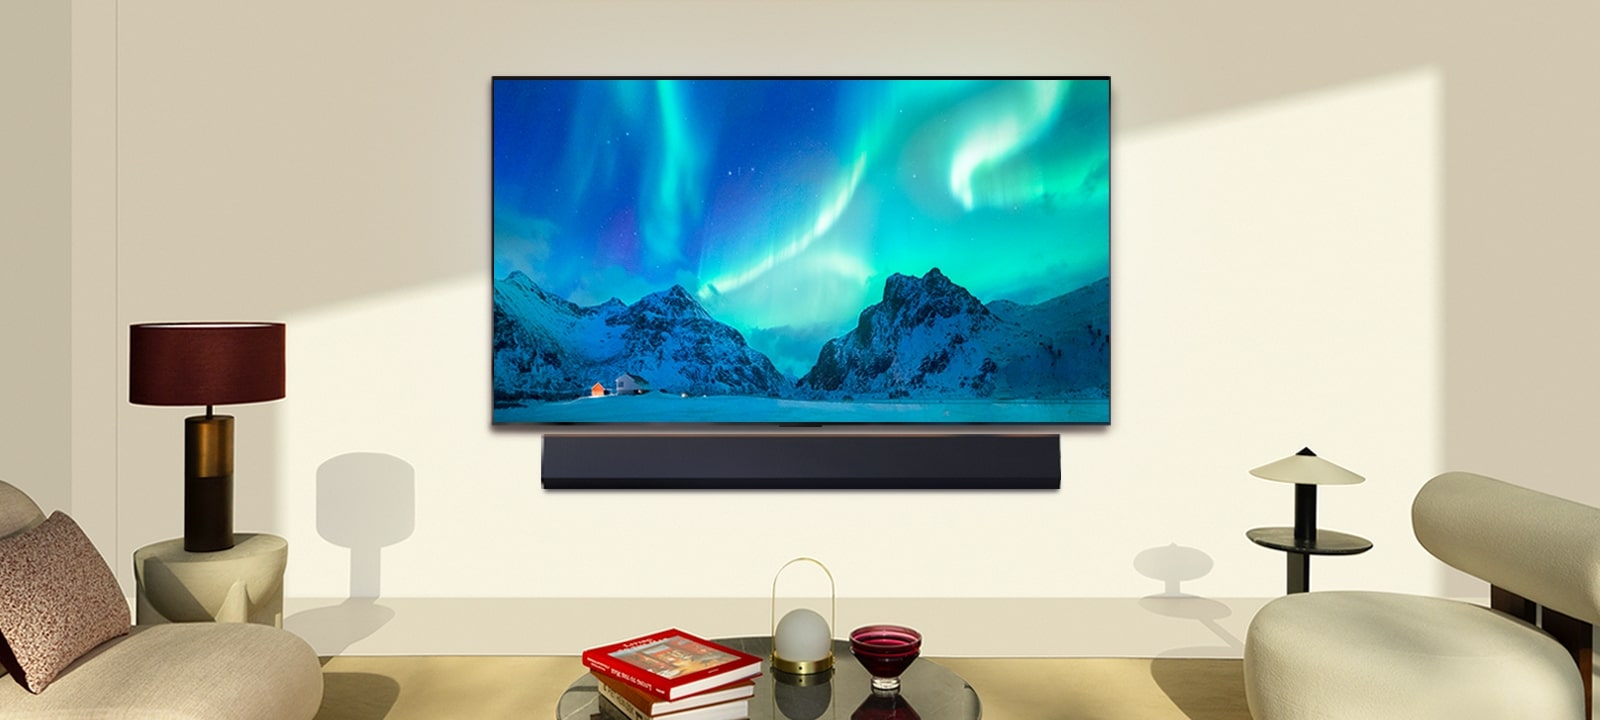 LG OLED TV ในพื้นที่อยู่อาศัยที่ทันสมัยในเวลากลางวัน ภาพหน้าจอของแสงออโรร่า บอเรลิส จะแสดงด้วยระดับความสว่างที่เหมาะสมที่สุด